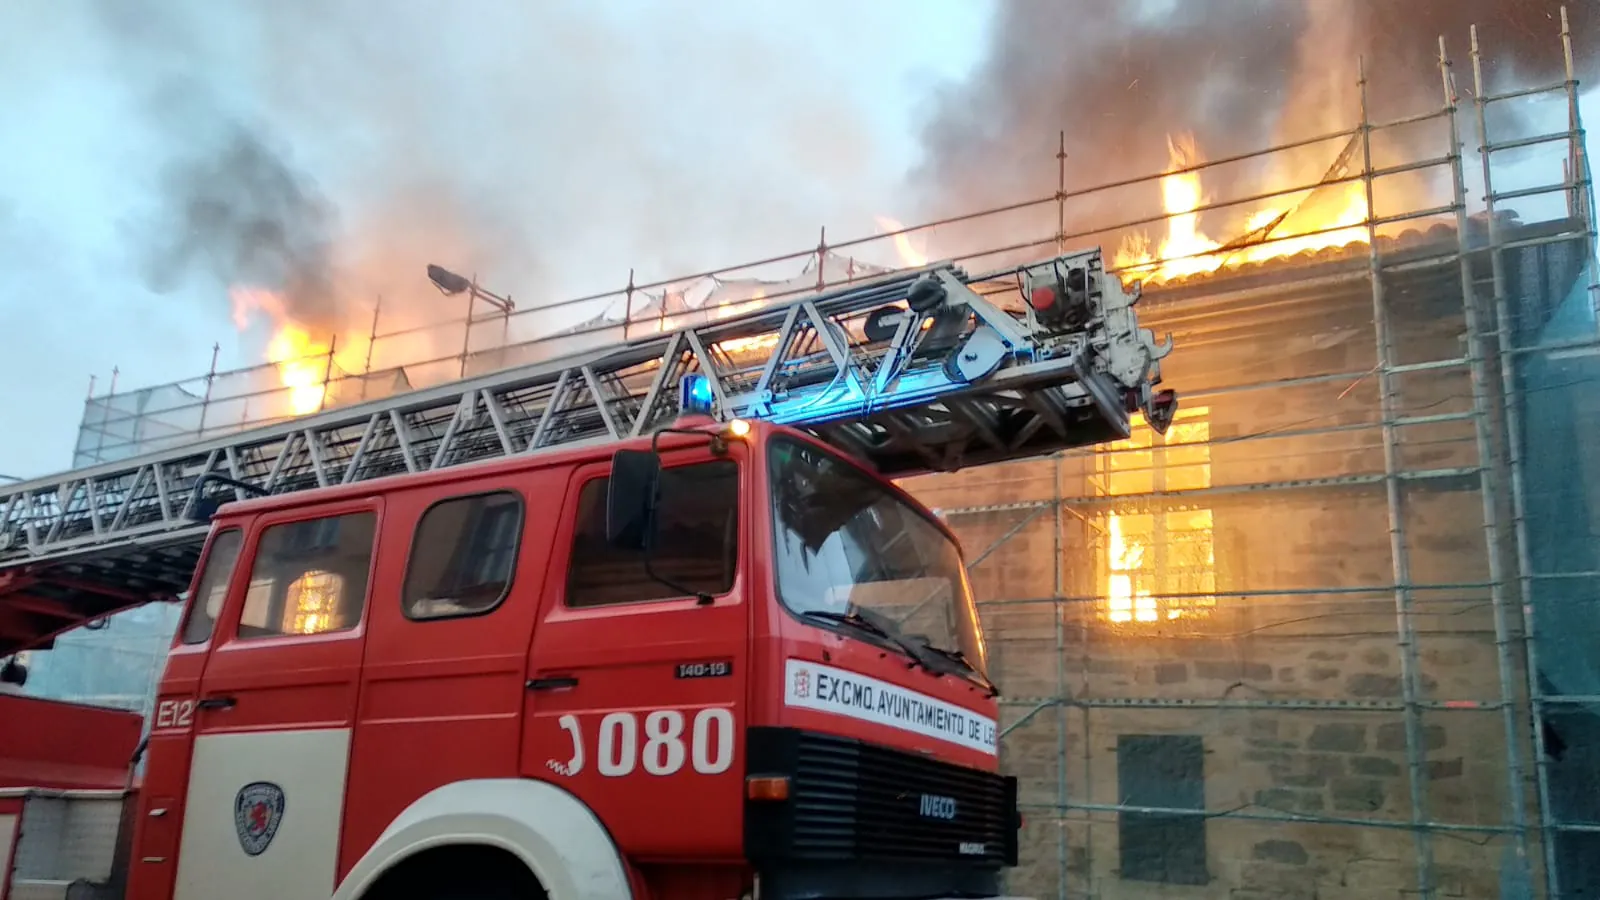 Fotos: Un incendio causa números daños en la Vieja Botica de Santa Colomba de Somoza